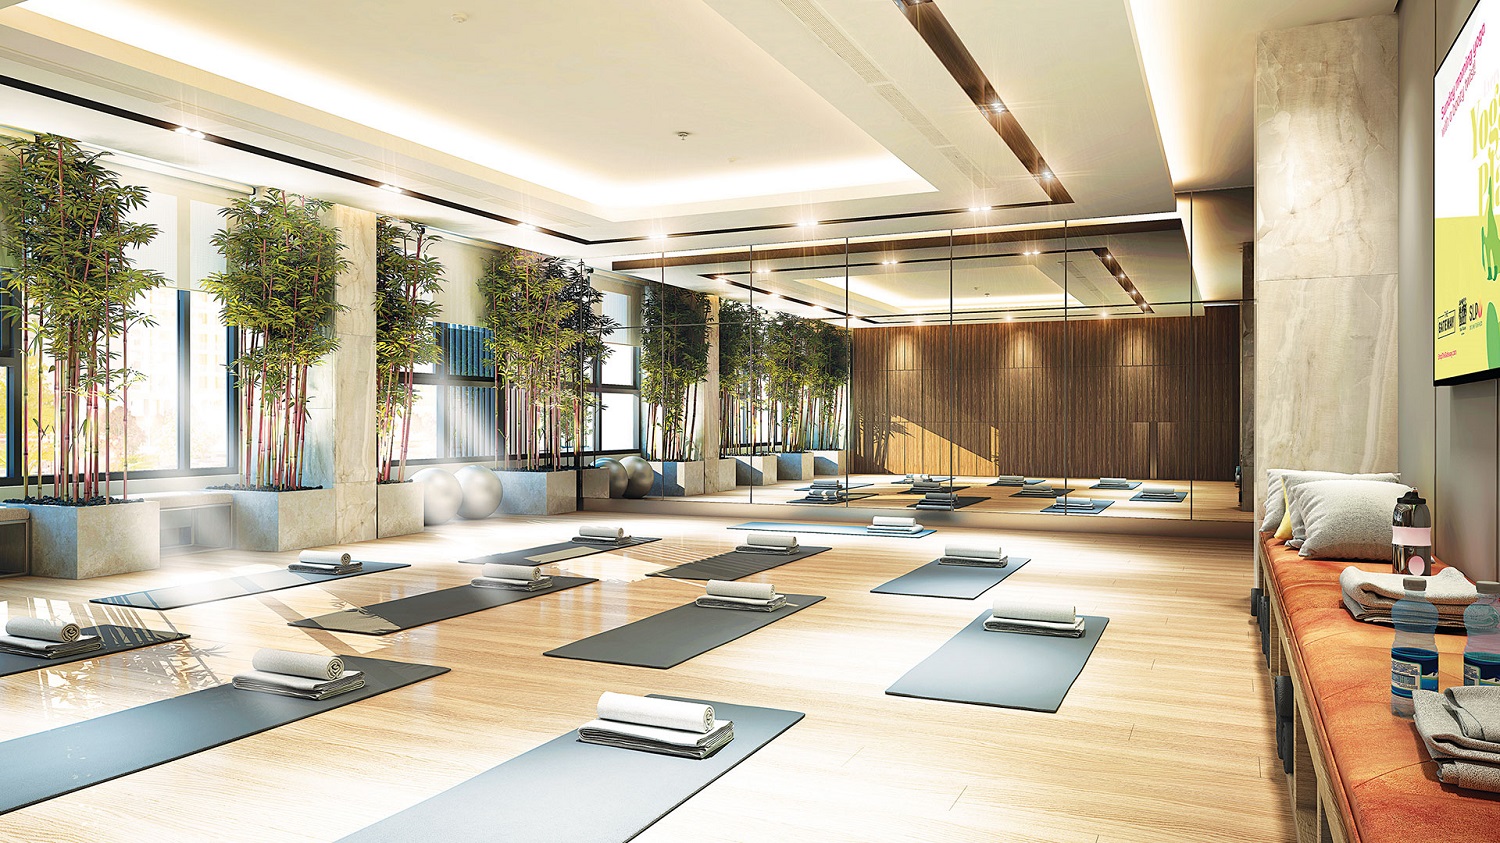 Phối cảnh không gian phòng tập yoga, môn thể thao đang được phái nữ ưa chuộng. Phòng tập thiết kế để tận dụng ánh sáng tự nhiên, tạo cảm hứng tập luyện.